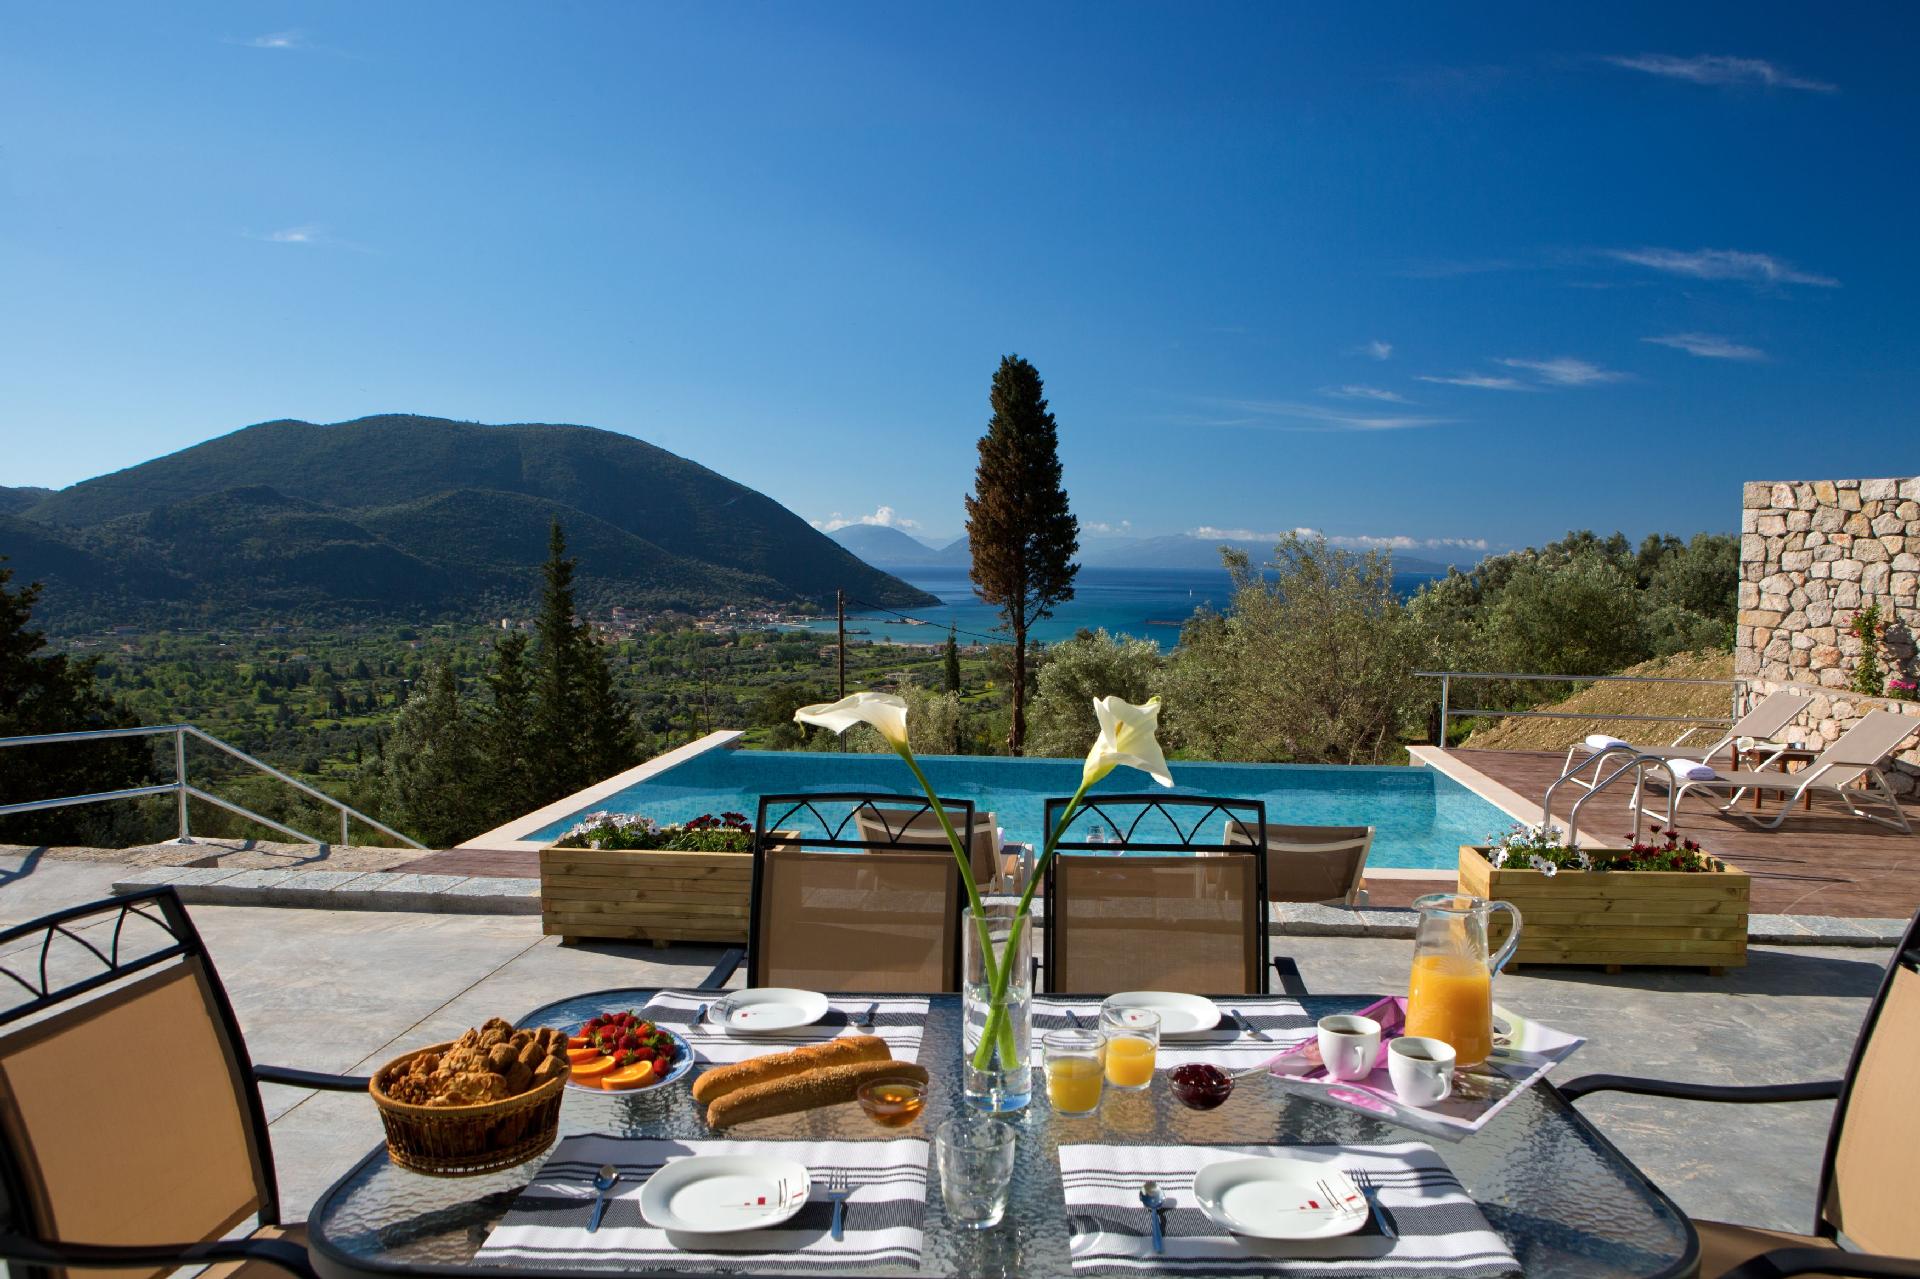 Ferienhaus mit Privatpool für 5 Personen ca.  Ferienhaus in Griechenland